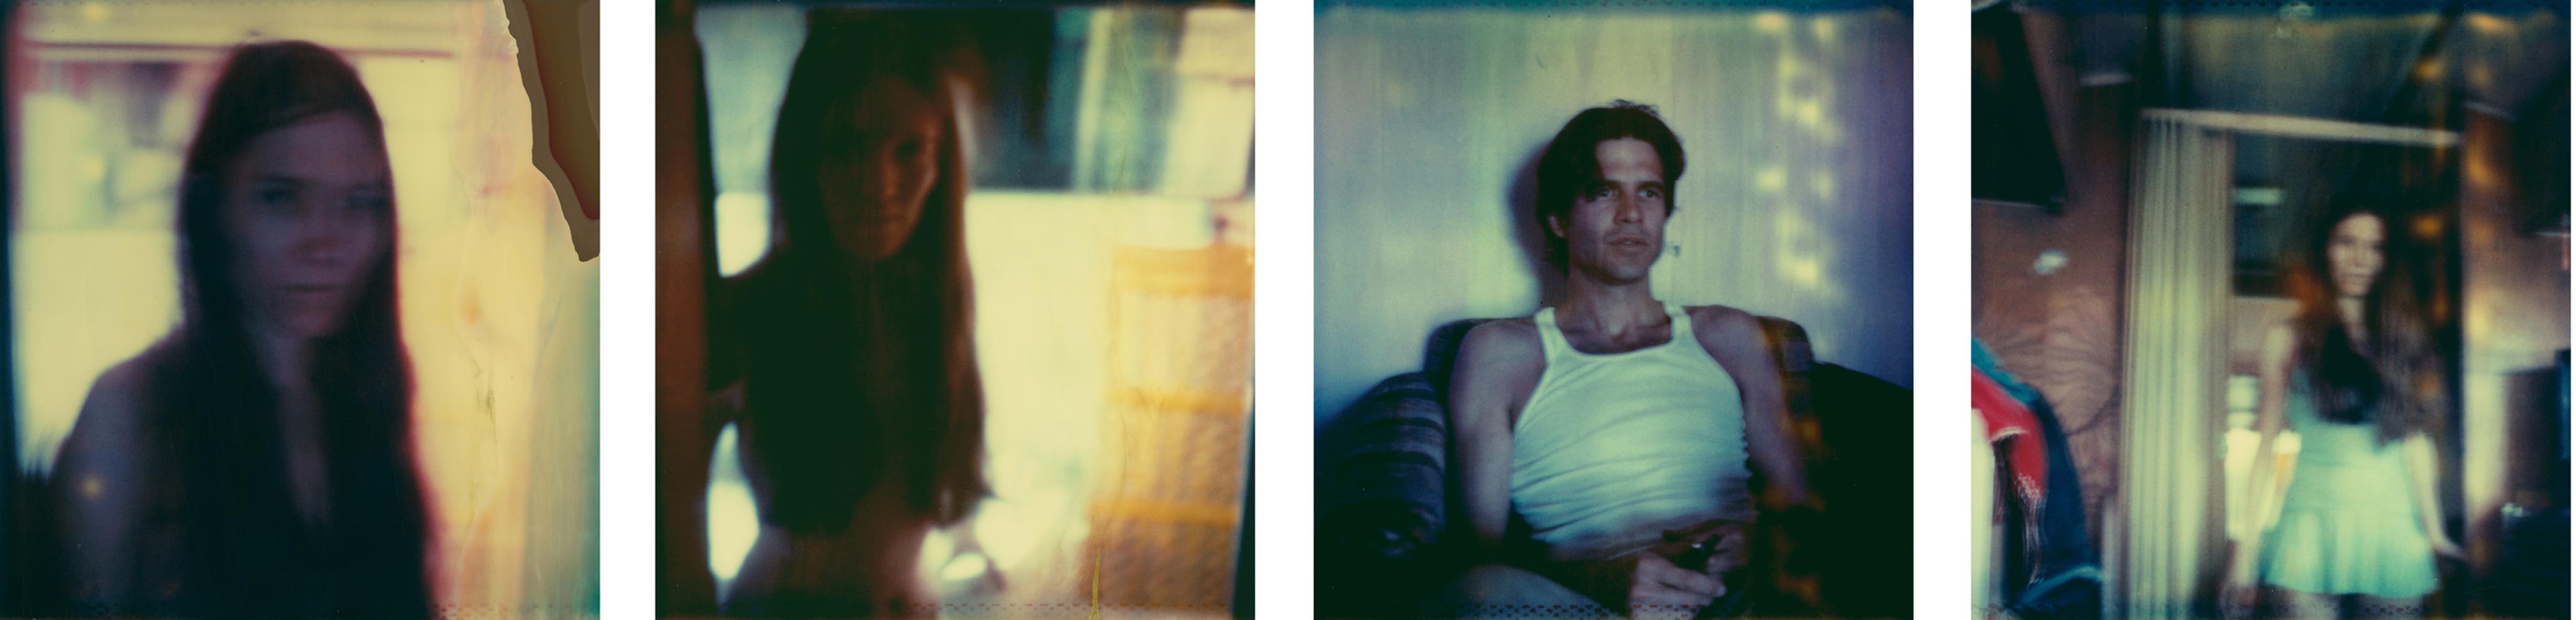 Inside the Trailer – 21. Jahrhundert, Polaroid, figürlich, Fotografie, Akt